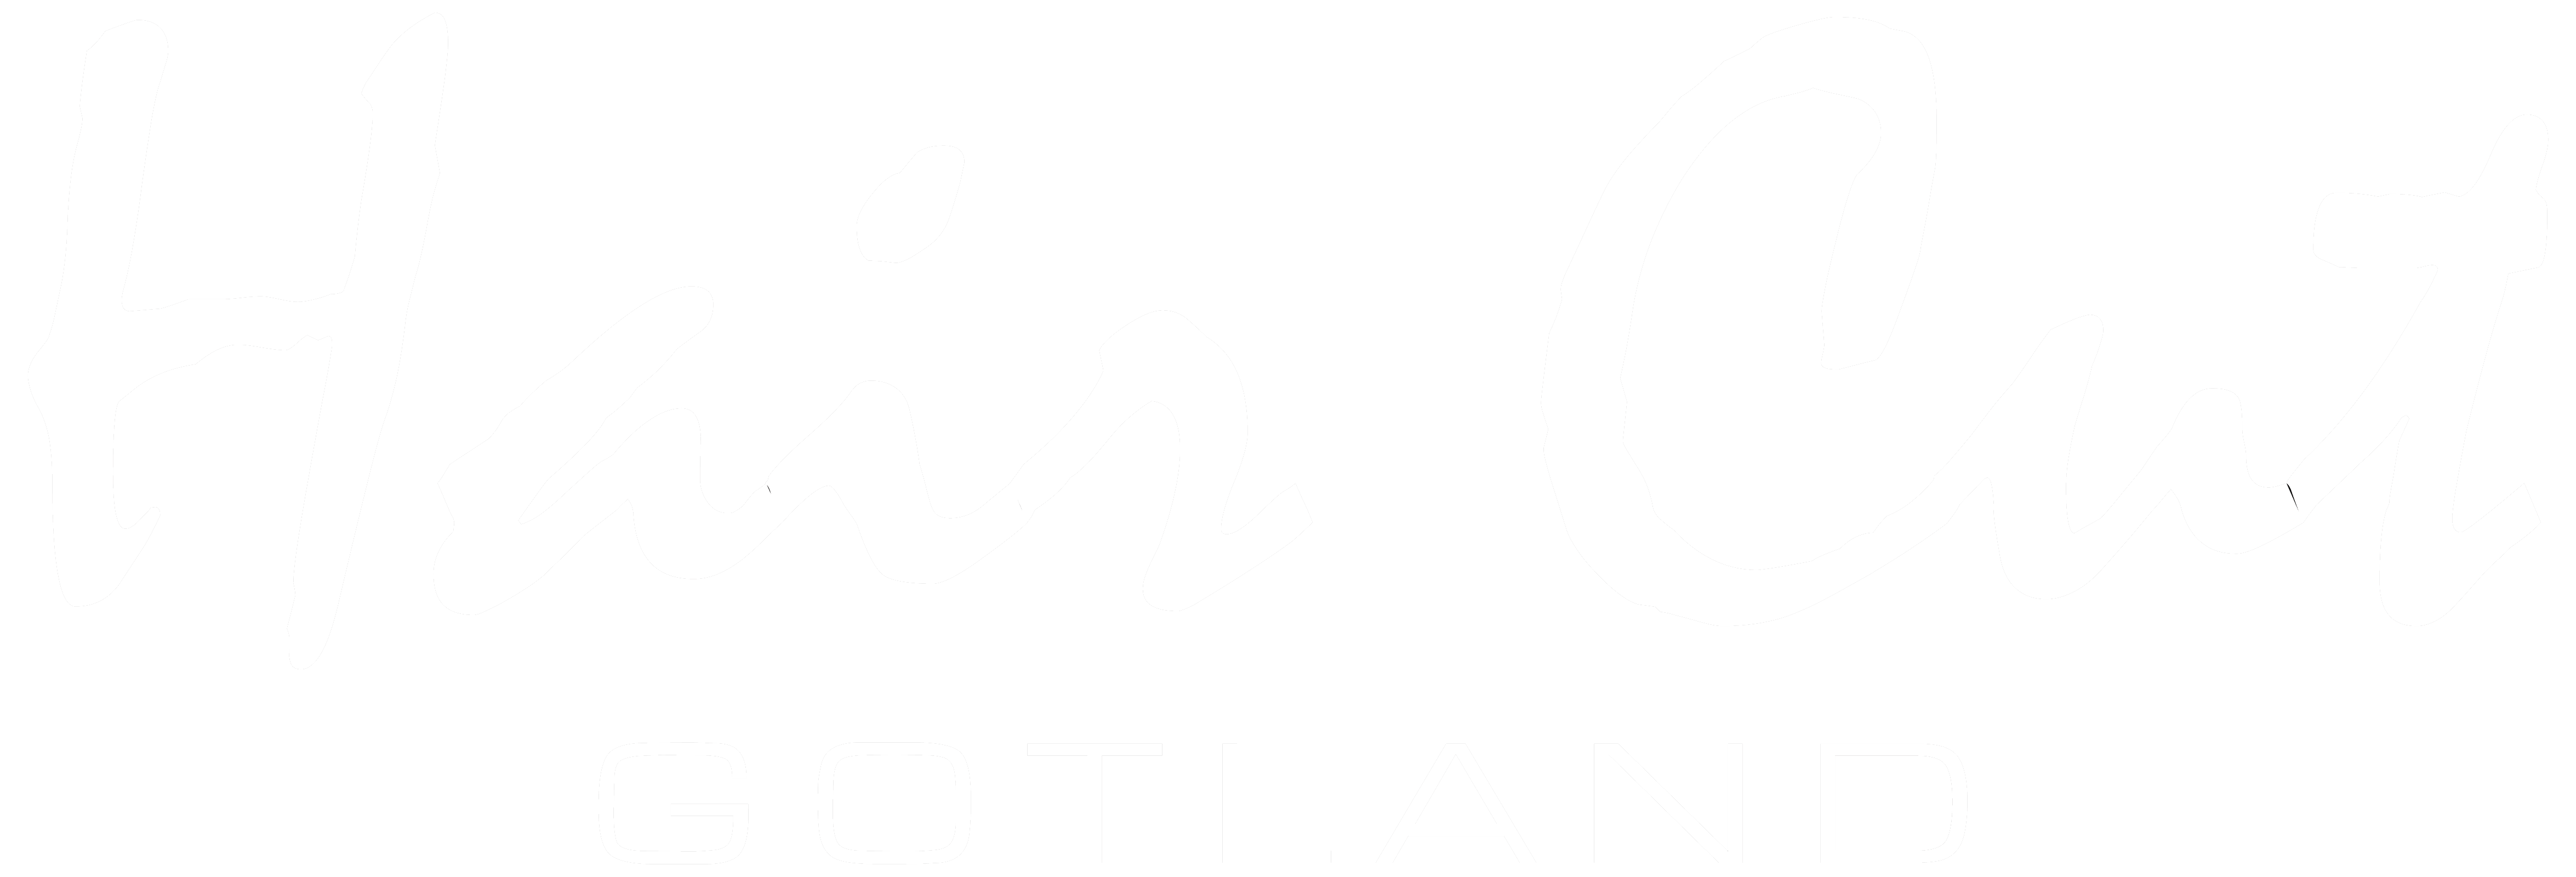 Hair Cut Gotland Logotyp